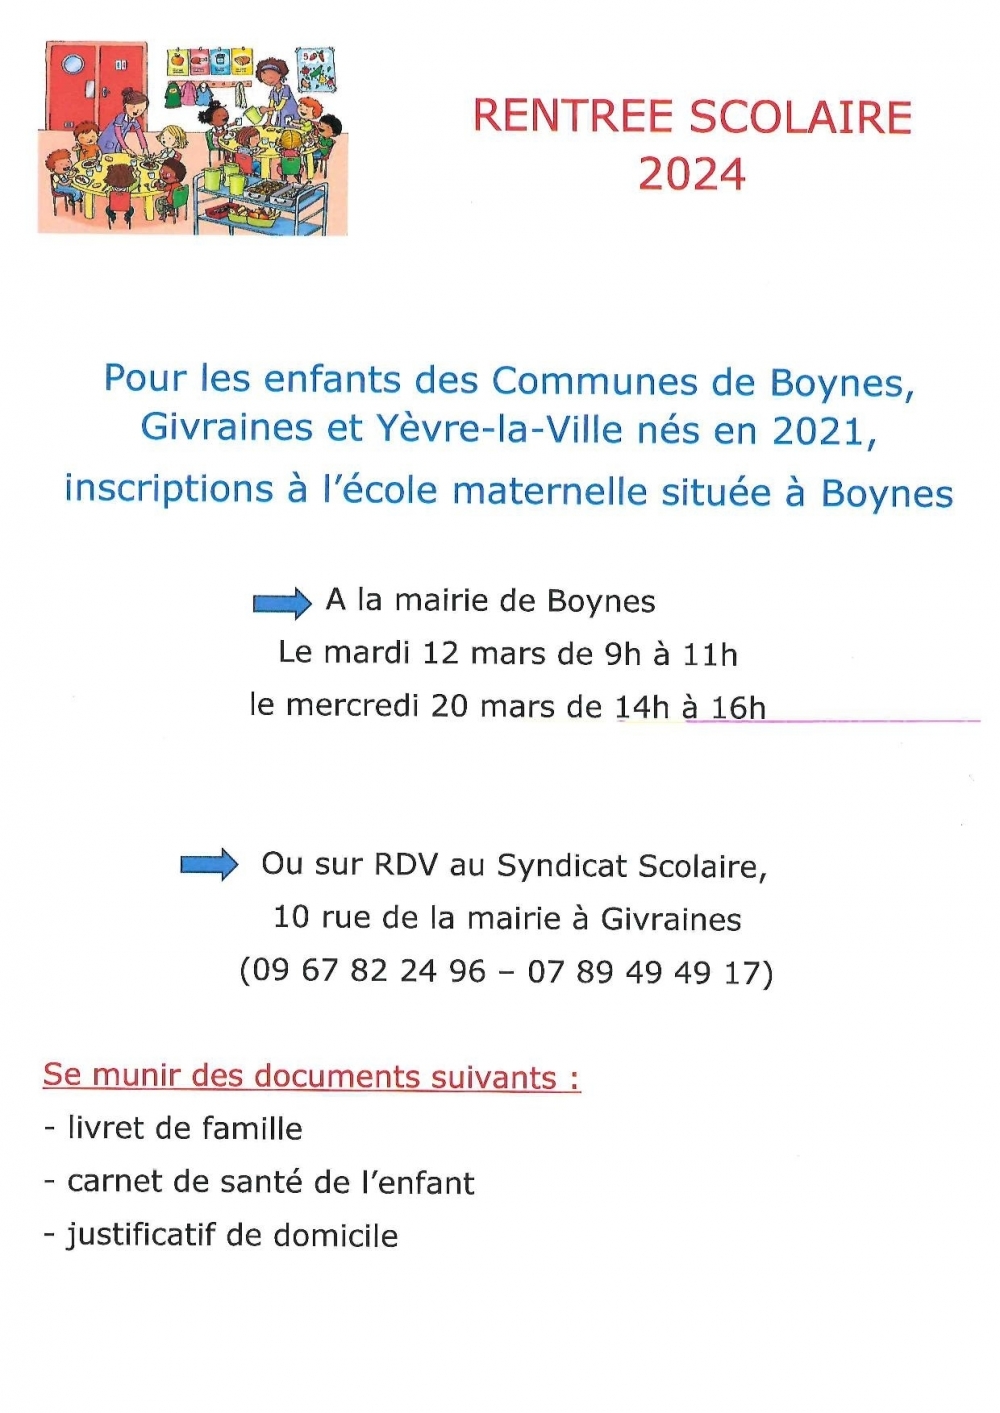 Rentrée scolaire 2024 - Commune de Boynes